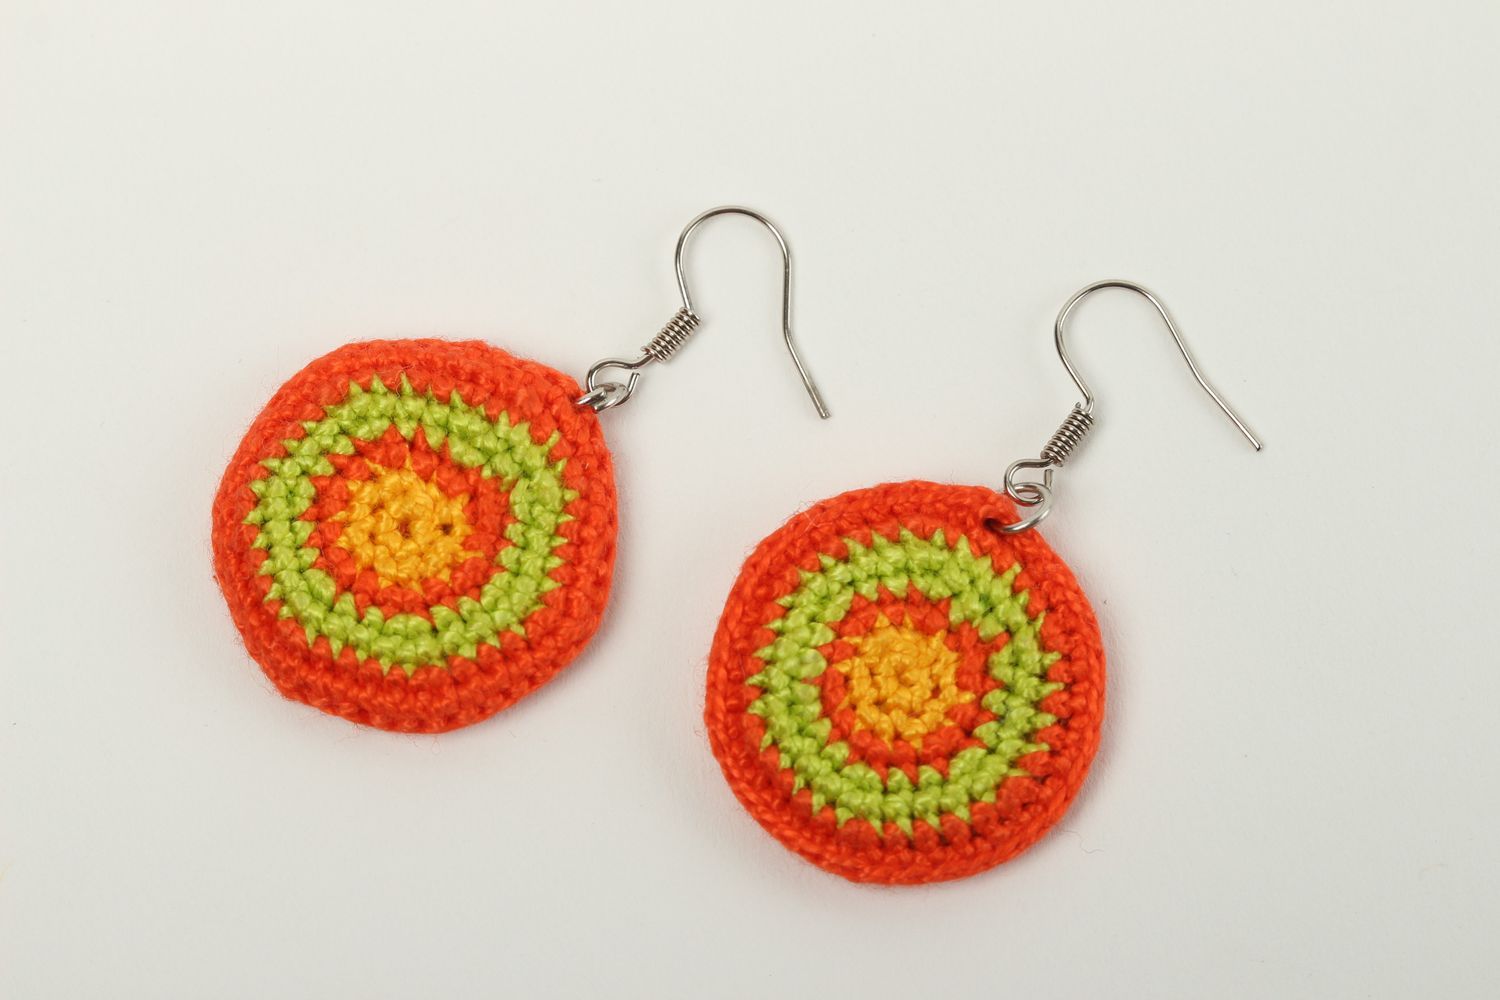 Handmade earrings designer earrings unusual accessory gift ideas crochet jewelry photo 2